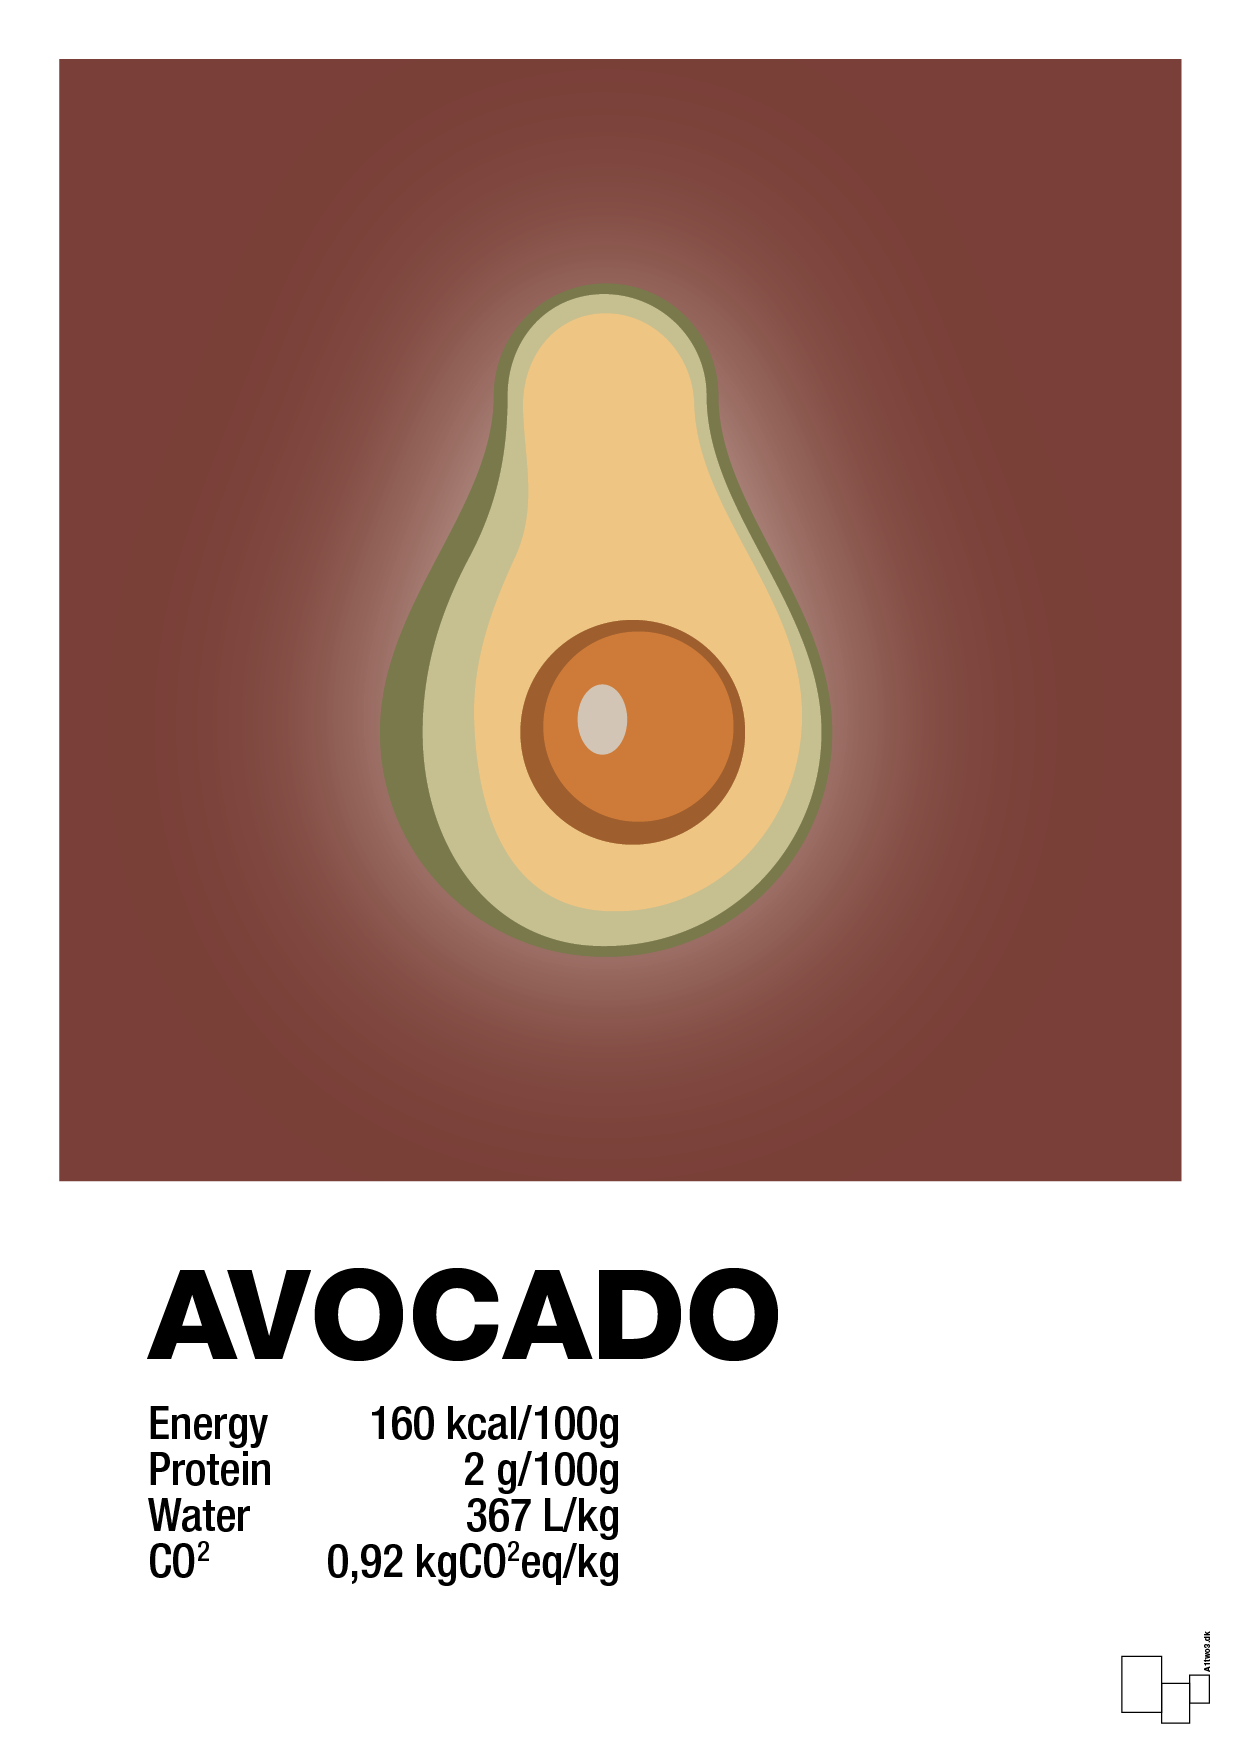 avocado nutrition og miljø - Plakat med Mad & Drikke i Red Pepper